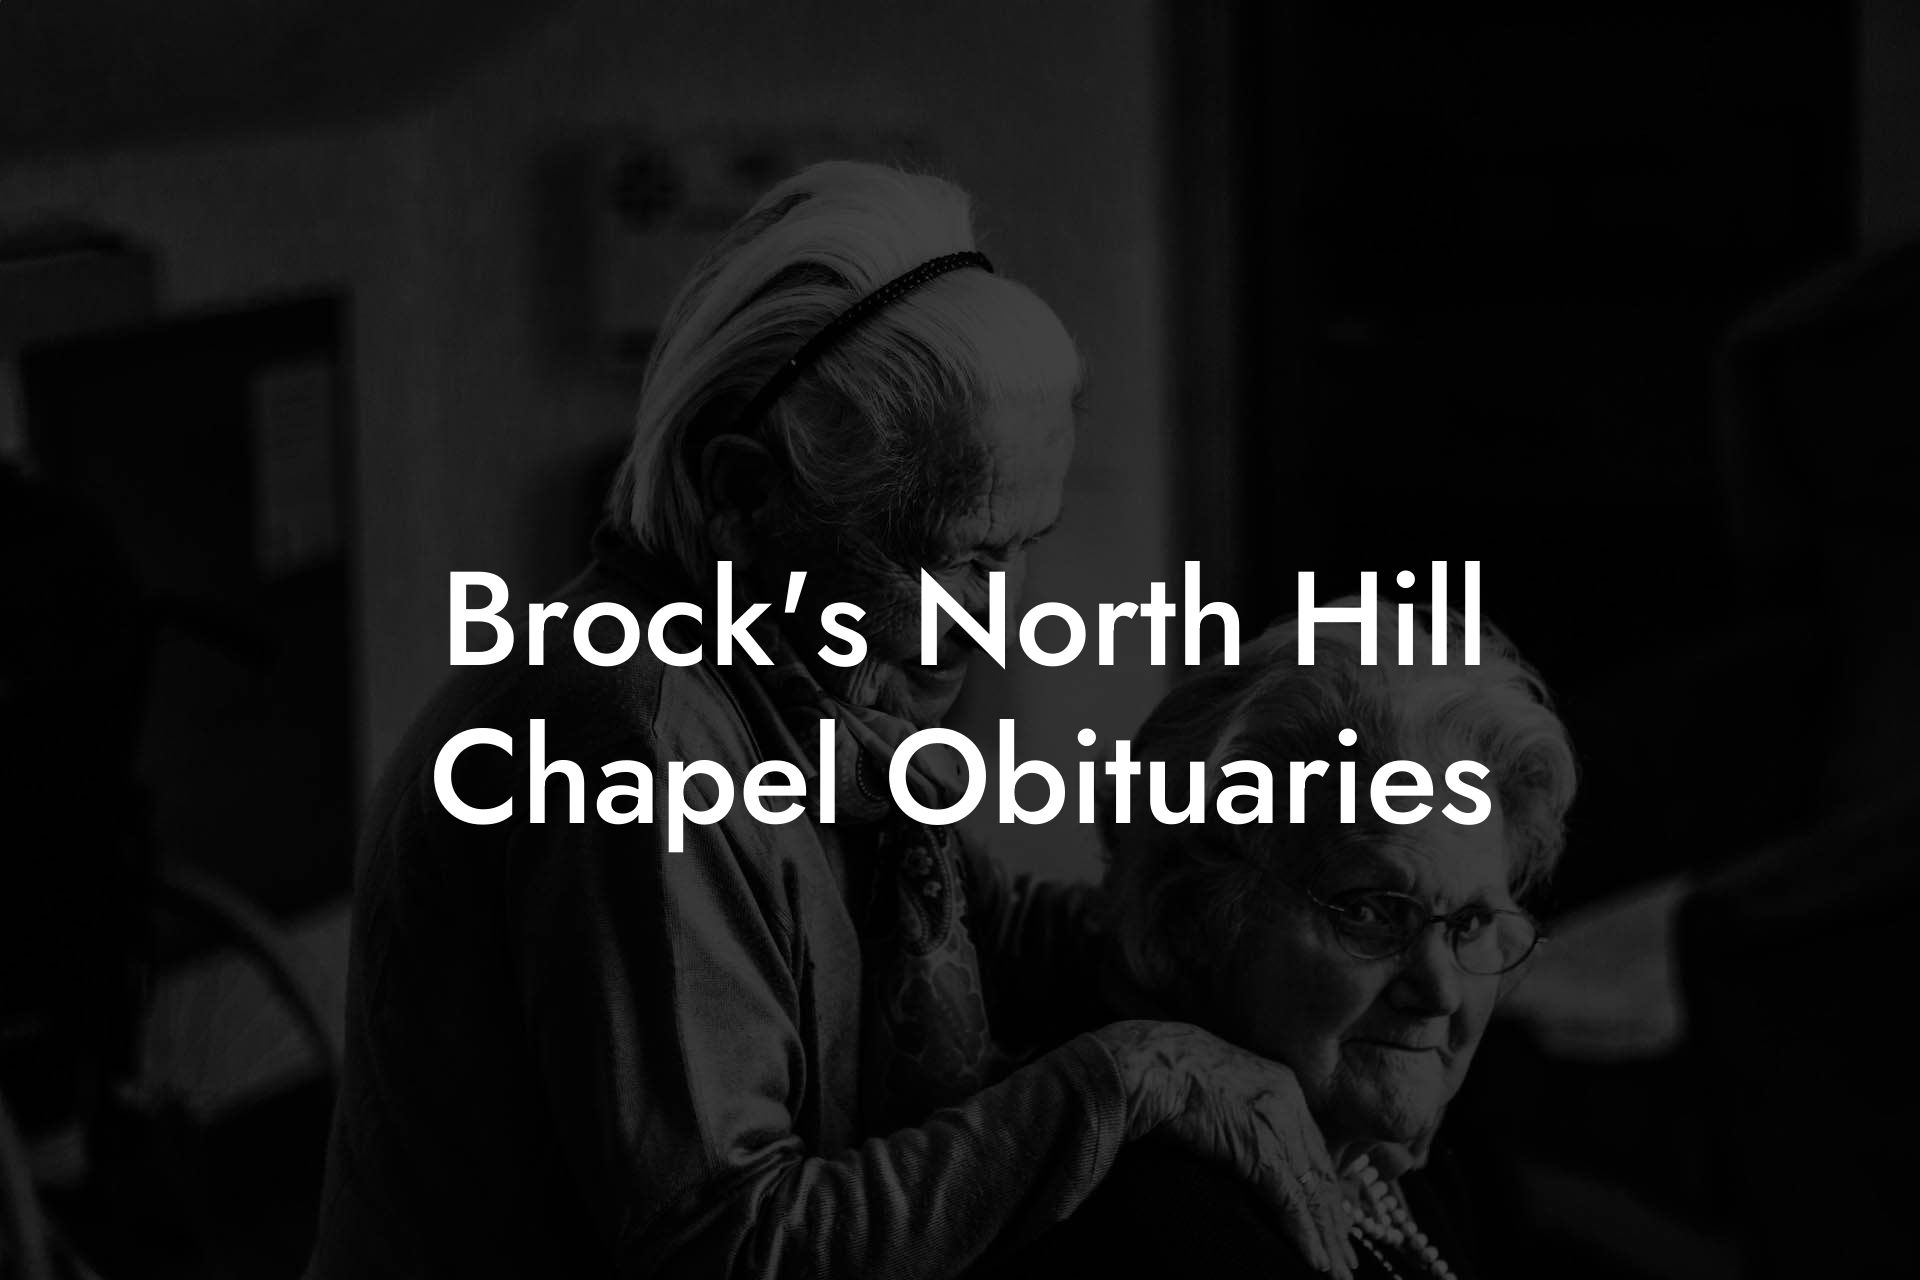 Brock's North Hill Chapel Obituaries